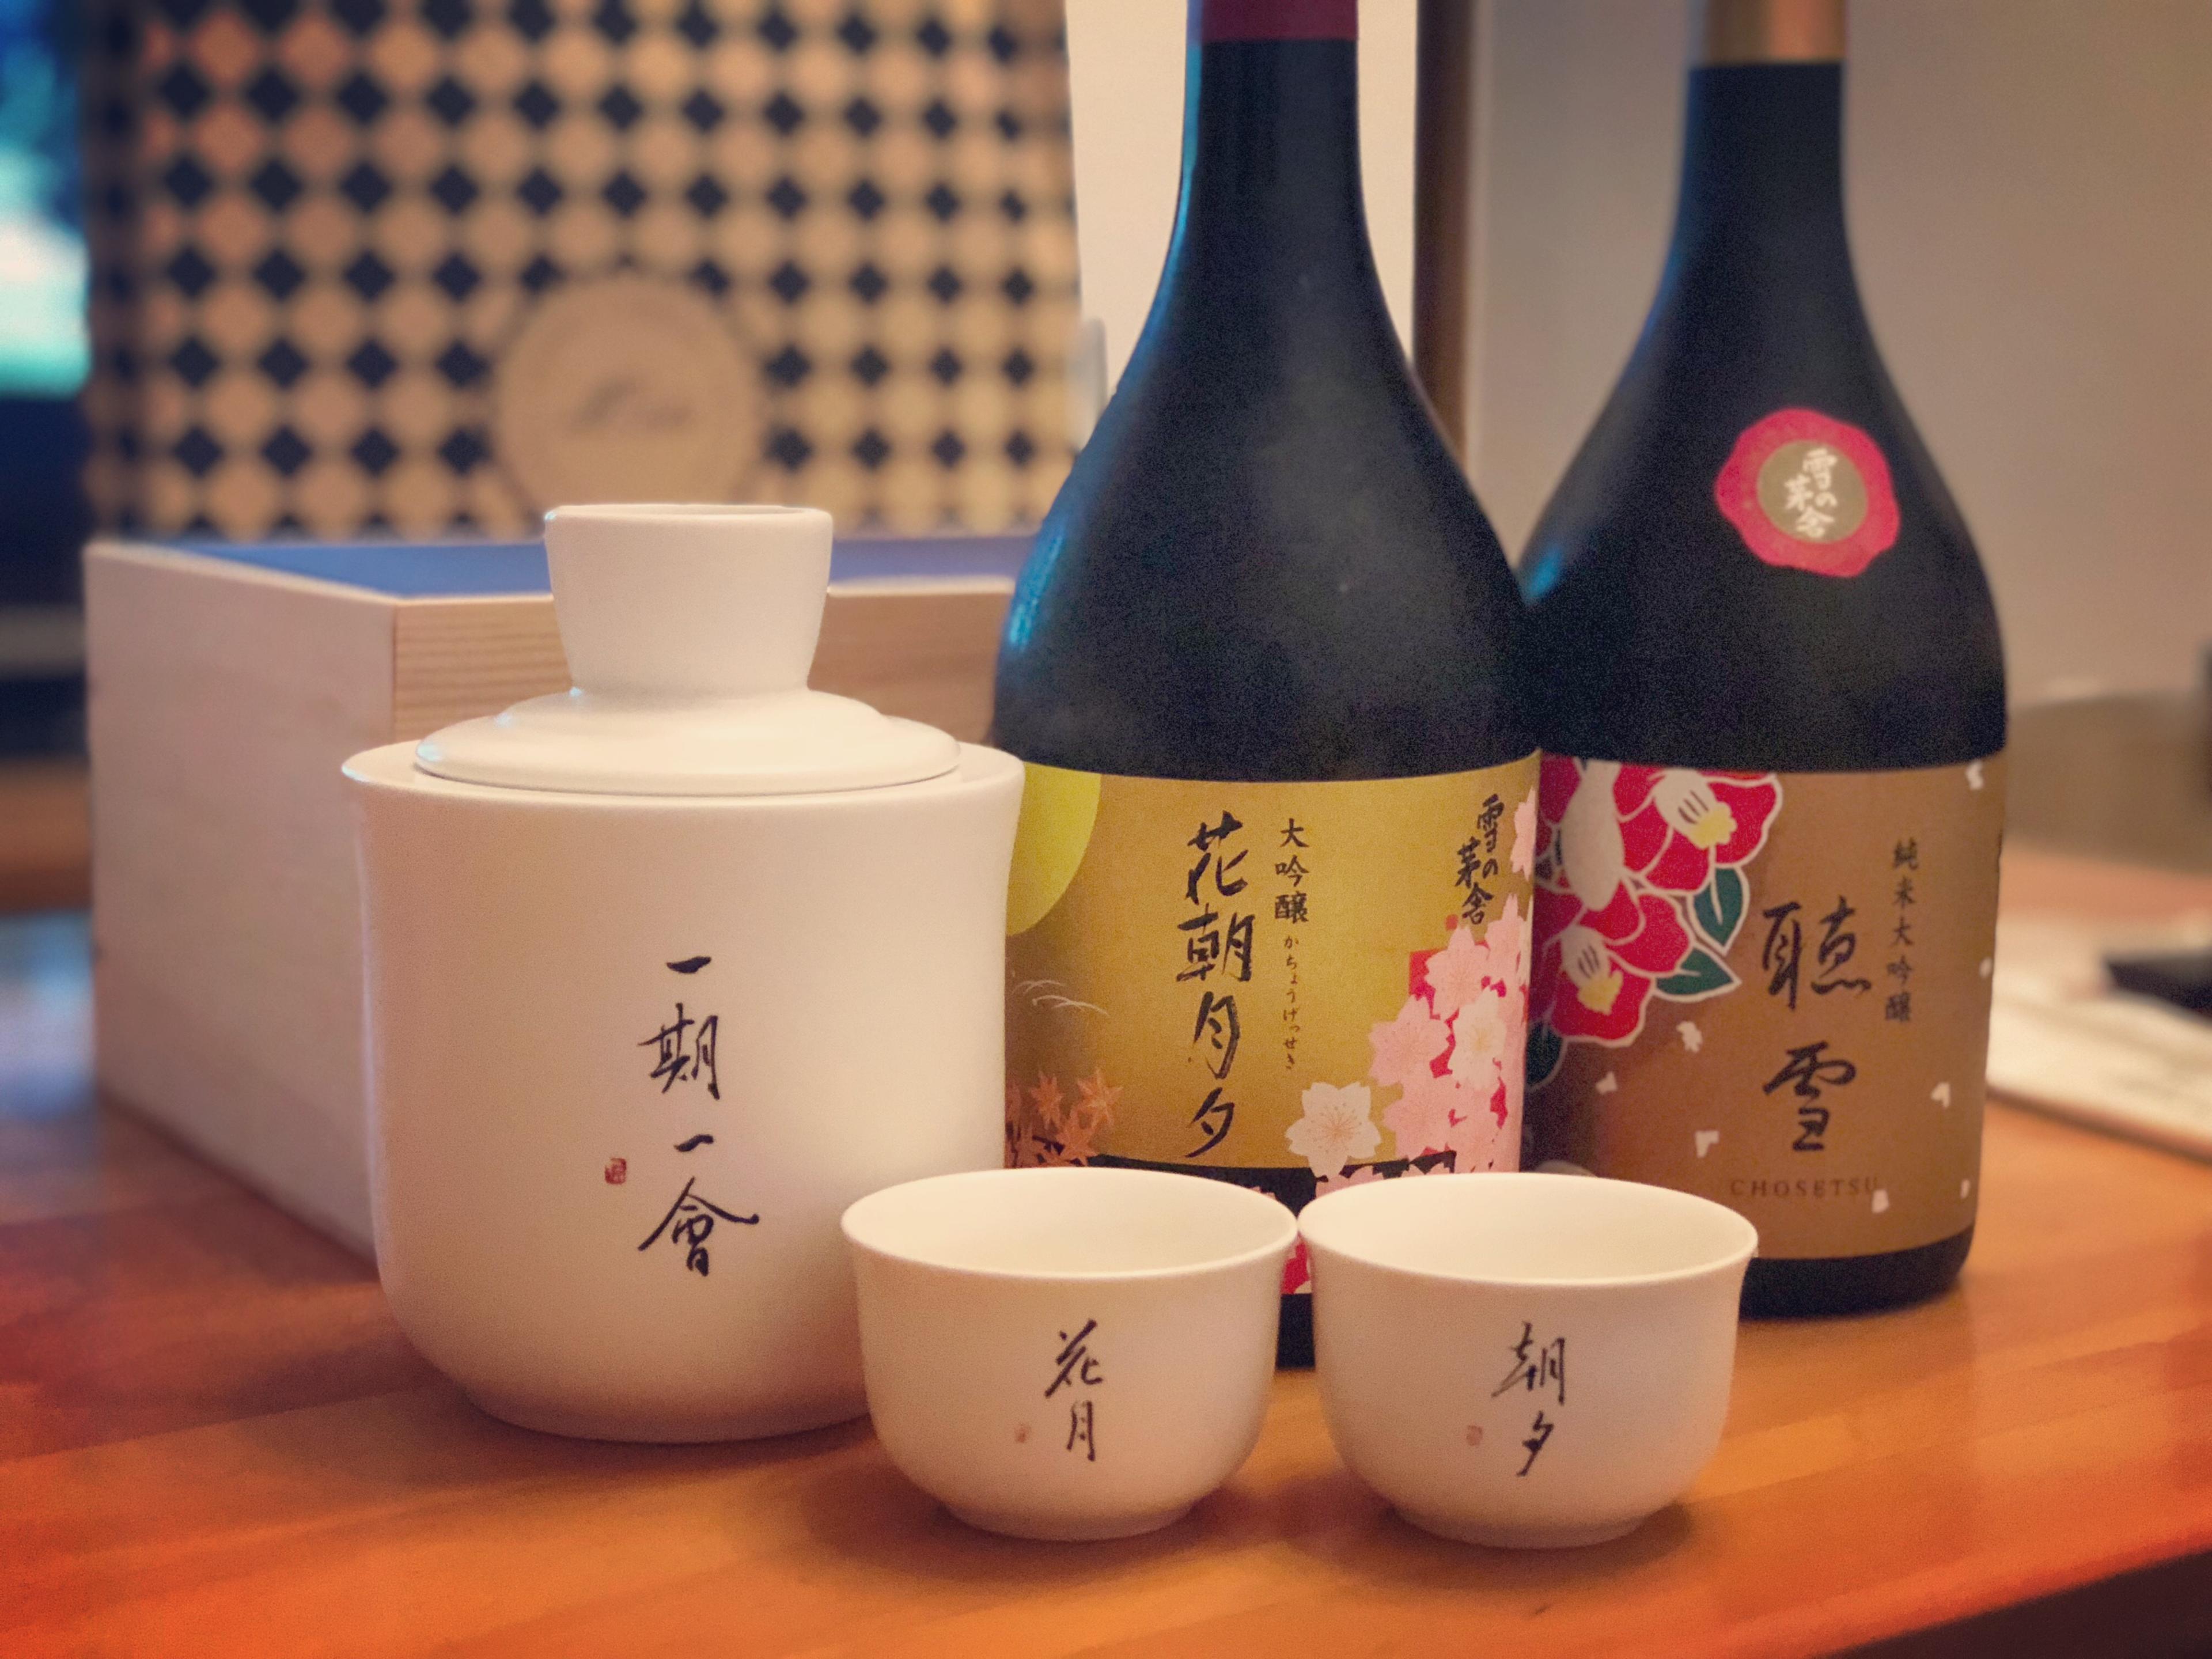 日本酒的季節美學每季都有限定酒 - WineNow HK